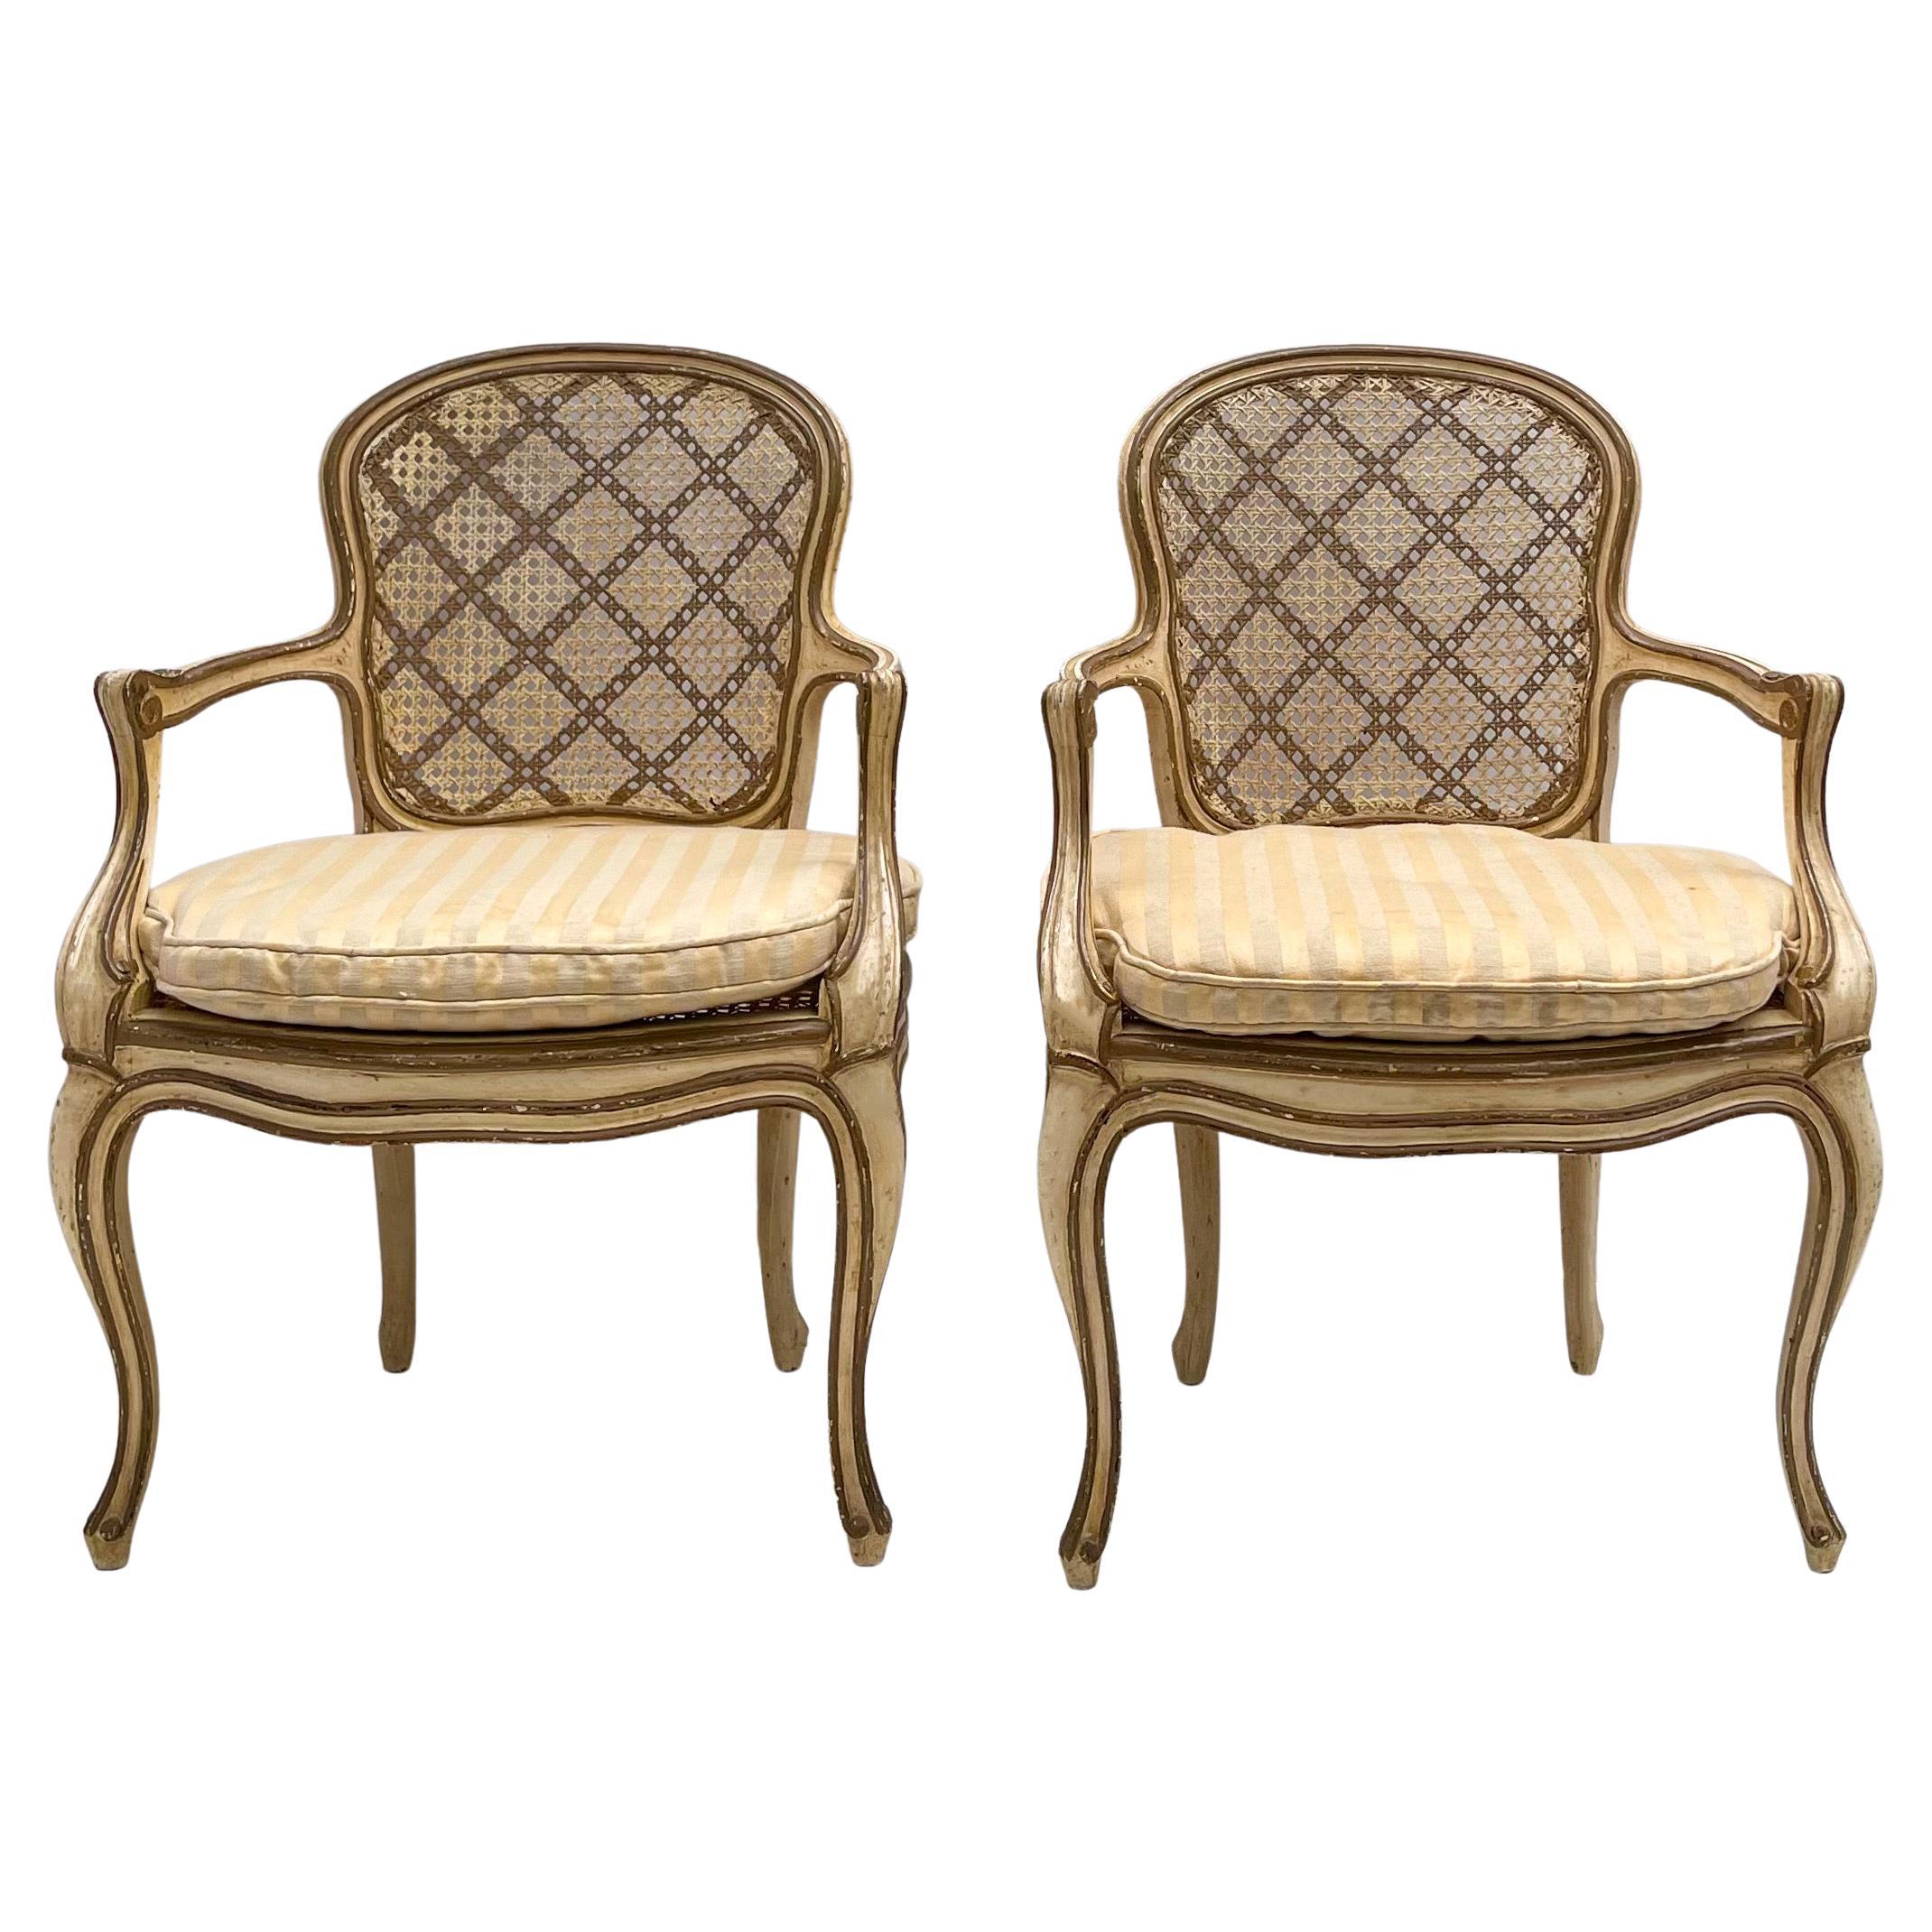 Paire de chaises Bergere françaises dorées et peintes des années 1950